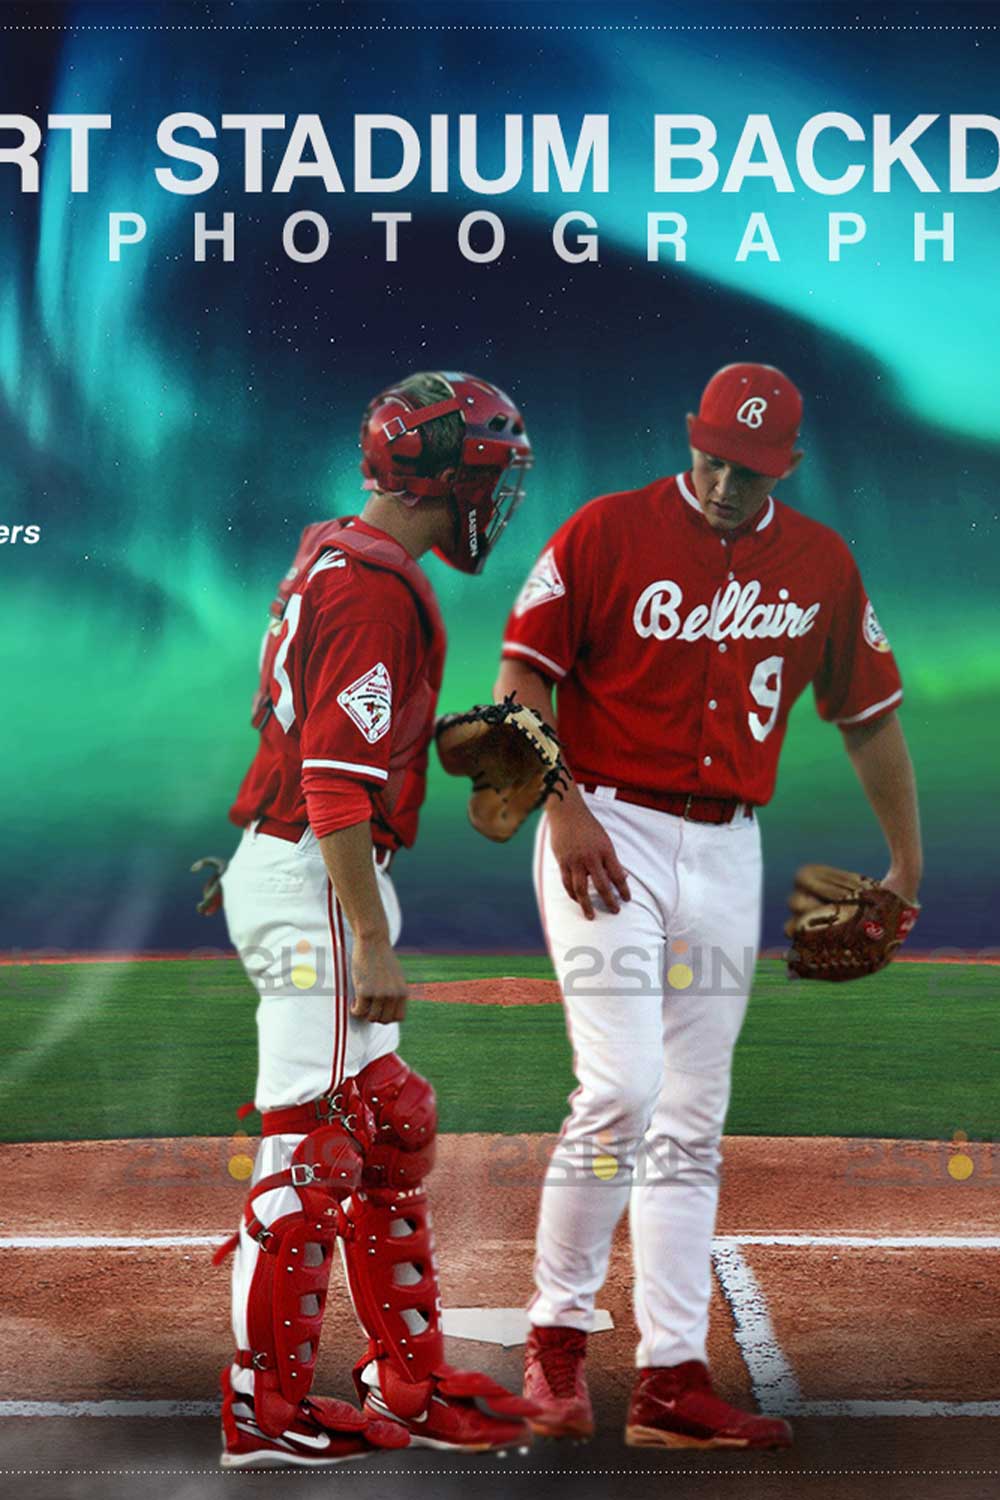 Baseball Stadium Backdrop Sports Digital Background Pinterest Image.